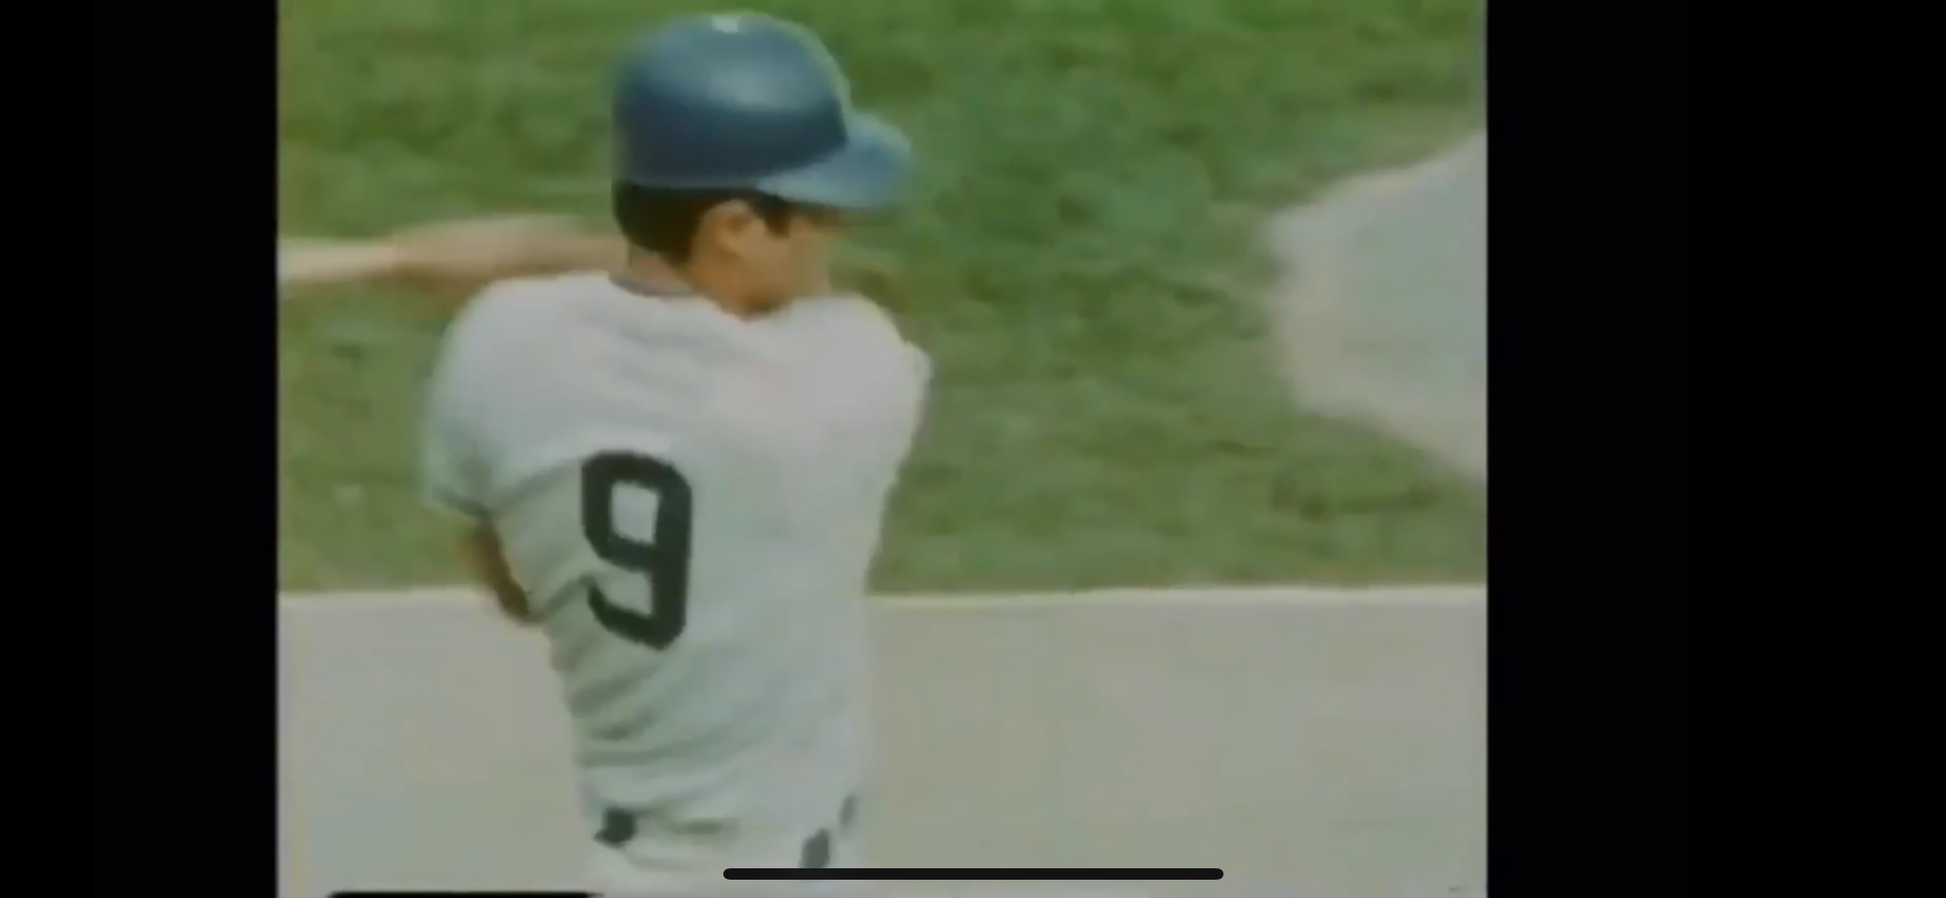 Kansas City Royals 1969 Lou Piniella MLB Baseball Jersey (44/Large